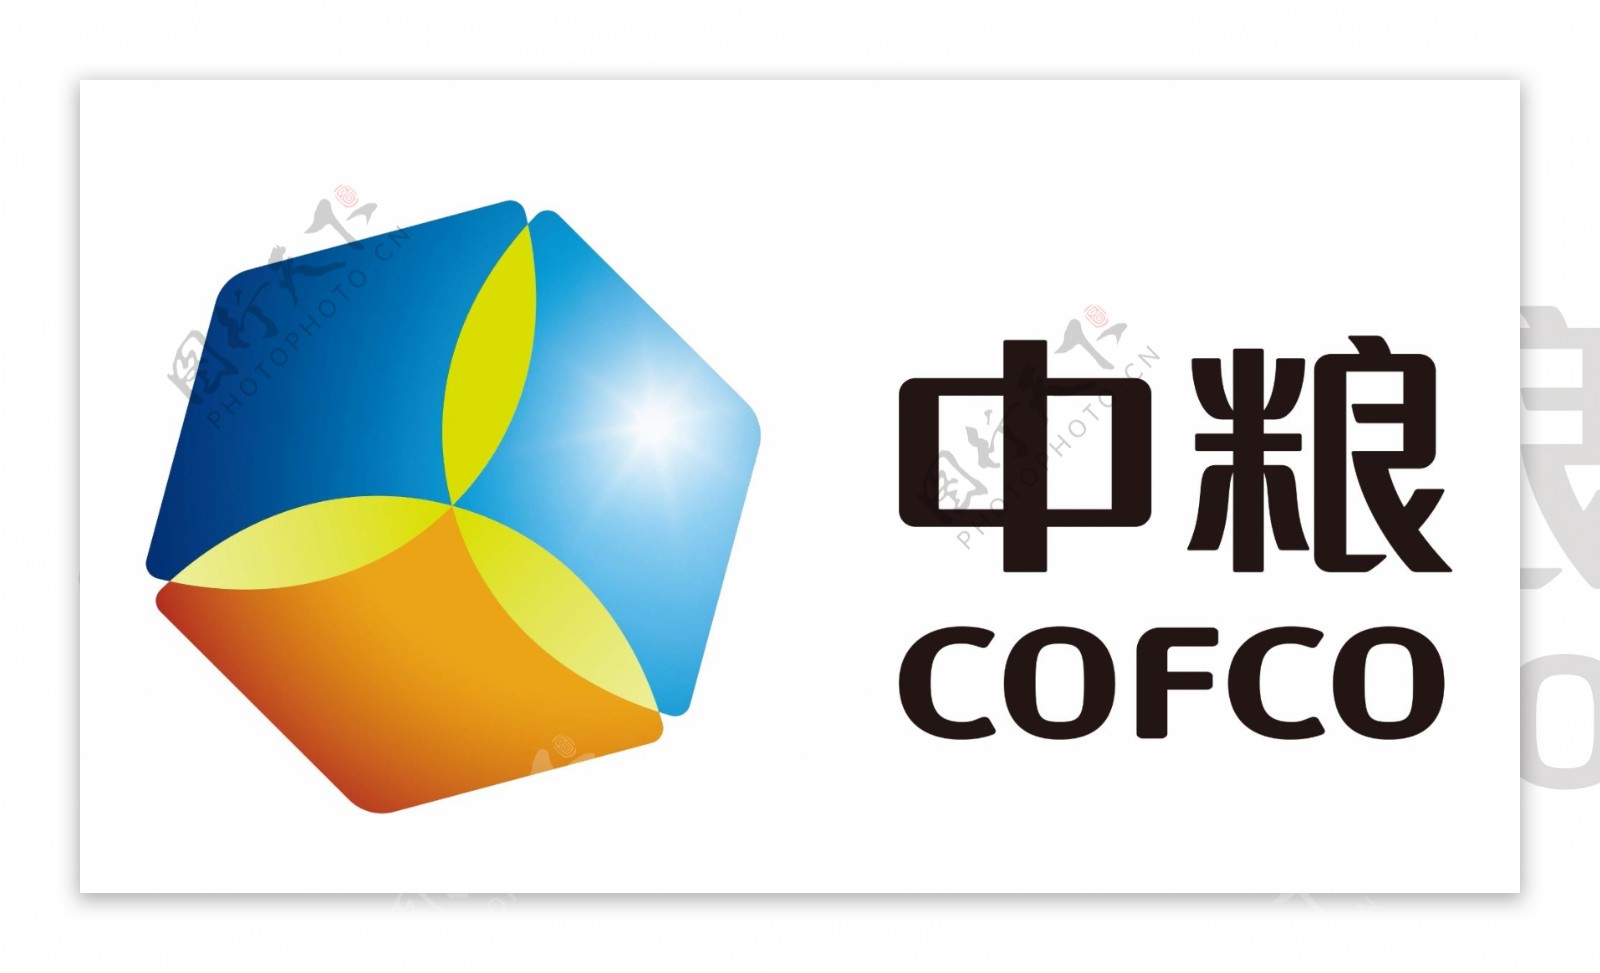 中粮logo